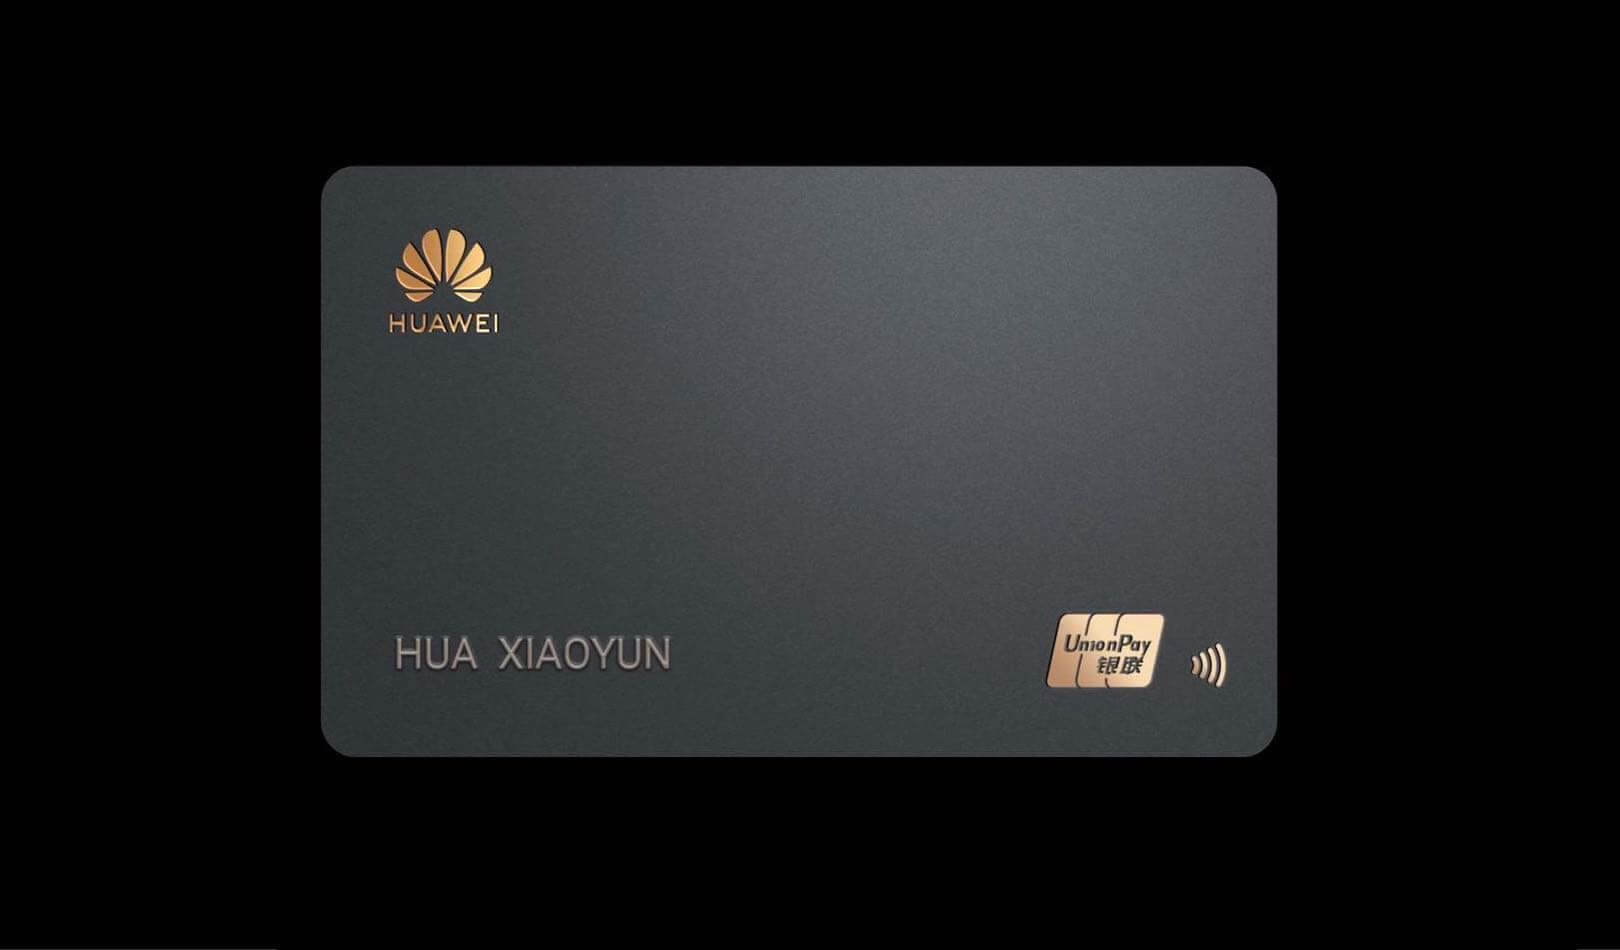 قدمت Huawei نظيرًا Apple البطاقة 23